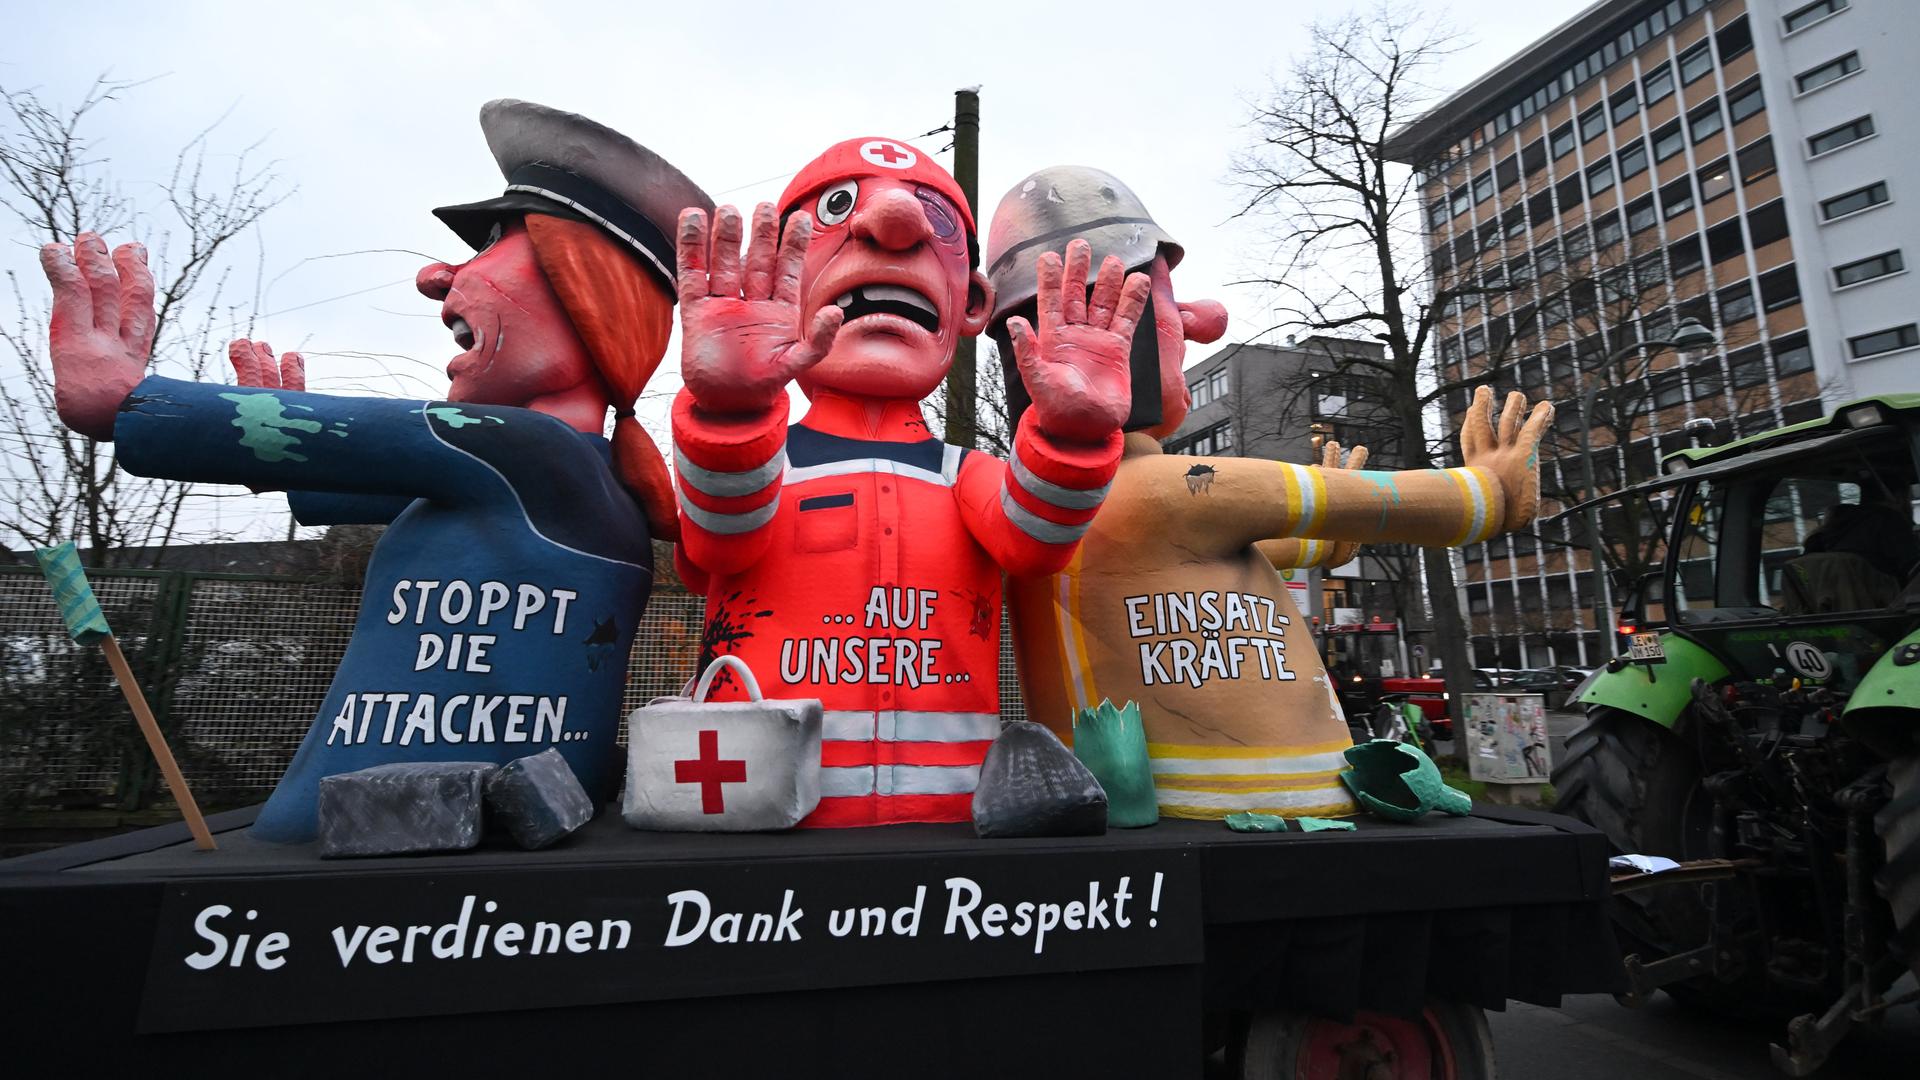 Düsseldorf: Ein Mottowagen gegen die Attacken auf Einsatzkräfte wird zum Rosenmontagszug gefahren.